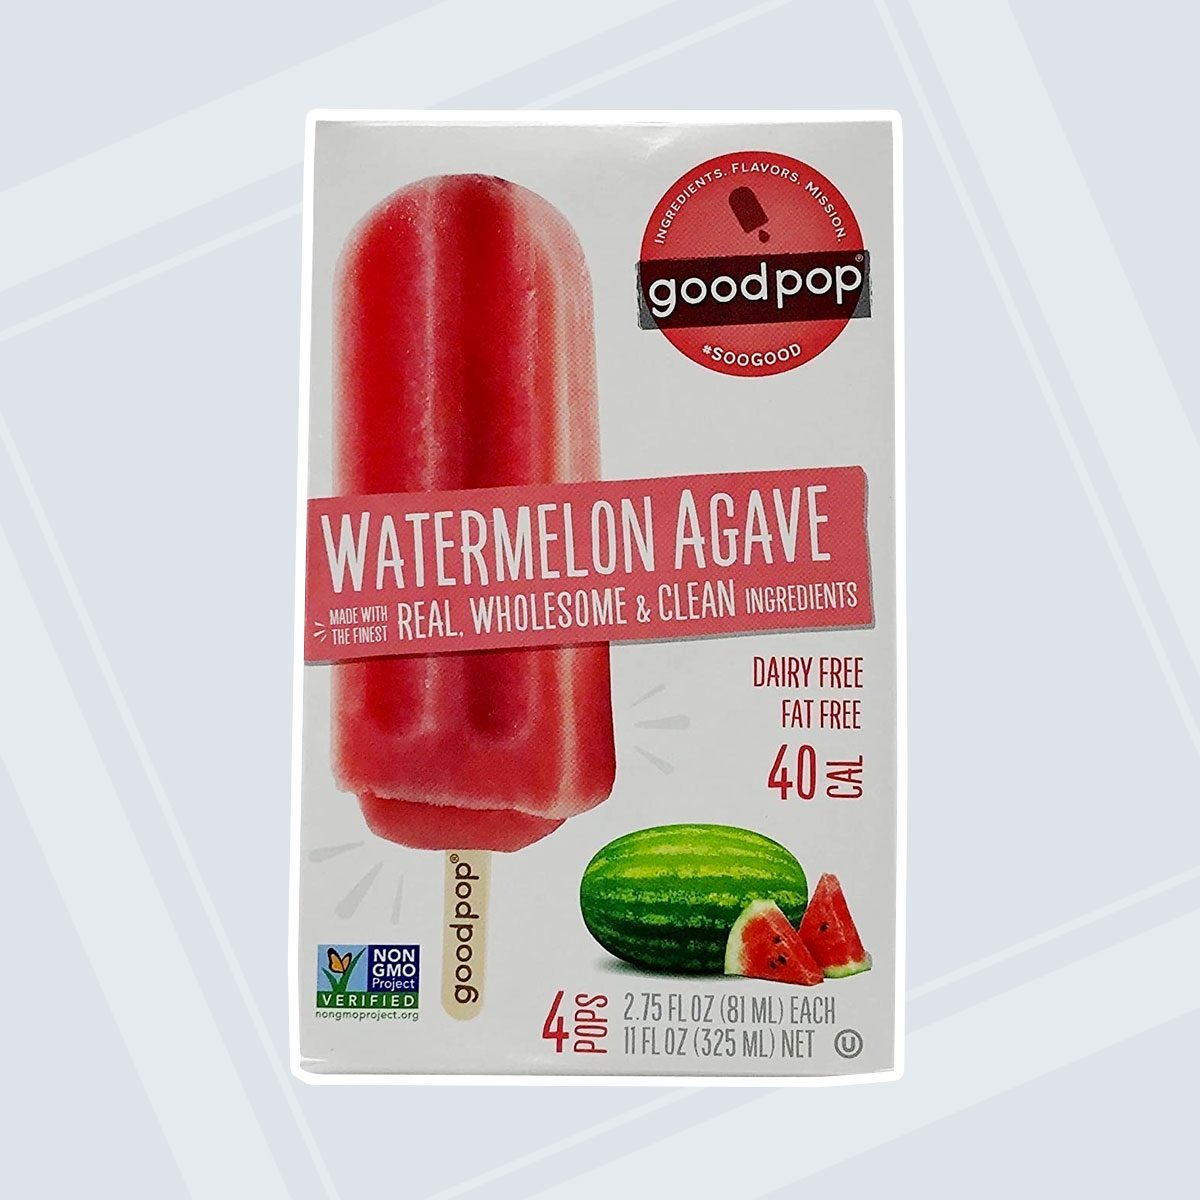 https://www.tasteofhome.com/wp-content/uploads/2021/04/GoodPop-Watermelon-Agave-Frozen-frozen.jpg?fit=696%2C696